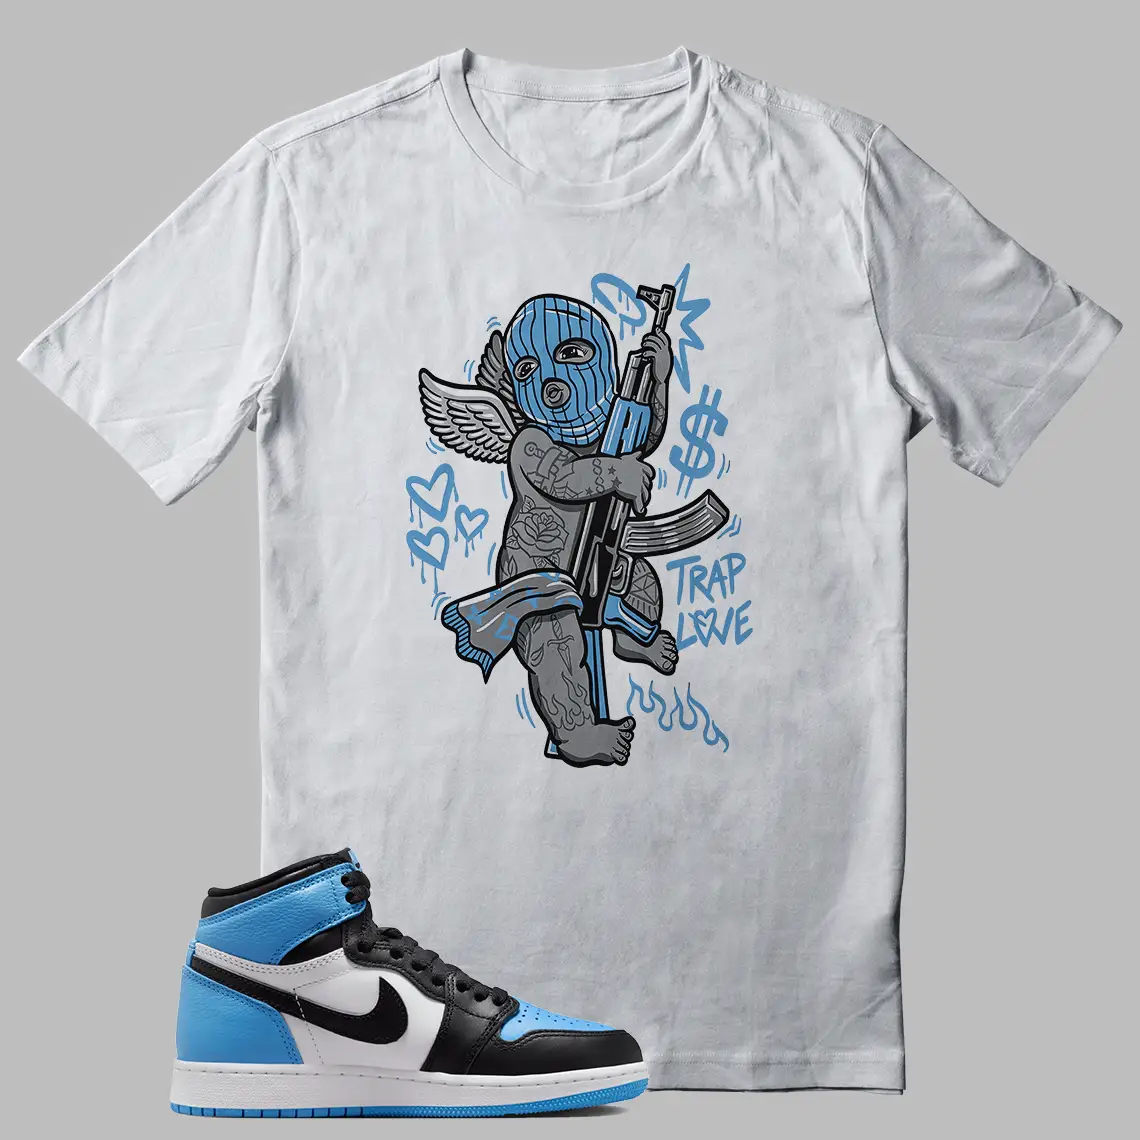 TRAP Shirt For Jordan 1 UNC Toe Sneakers